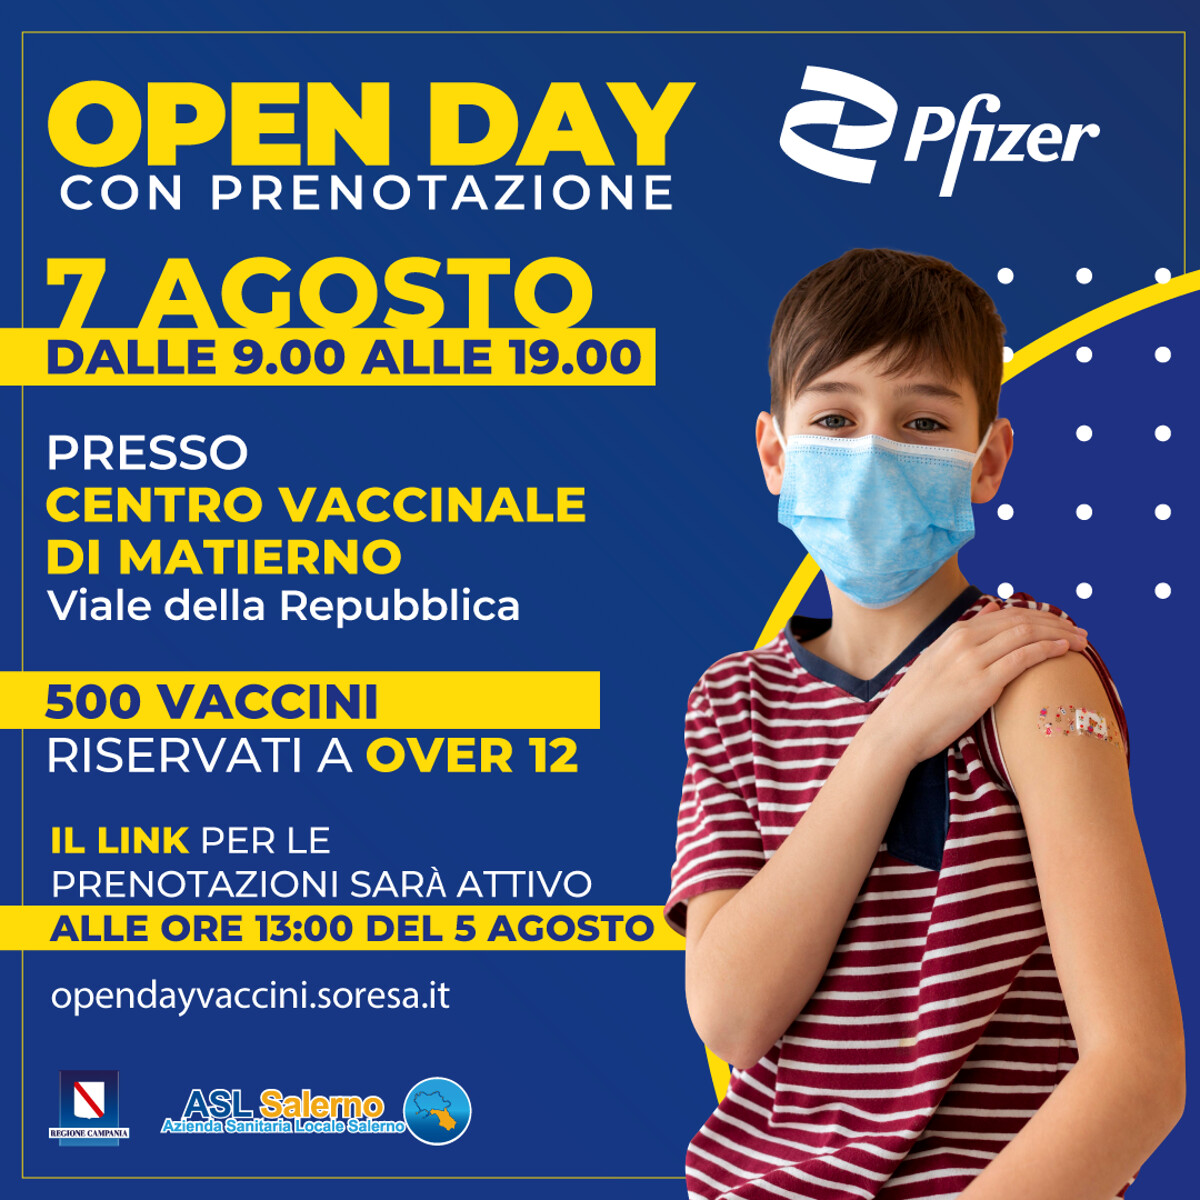 Open day Pfizer a Salerno: al via le prenotazioni per gli over 12